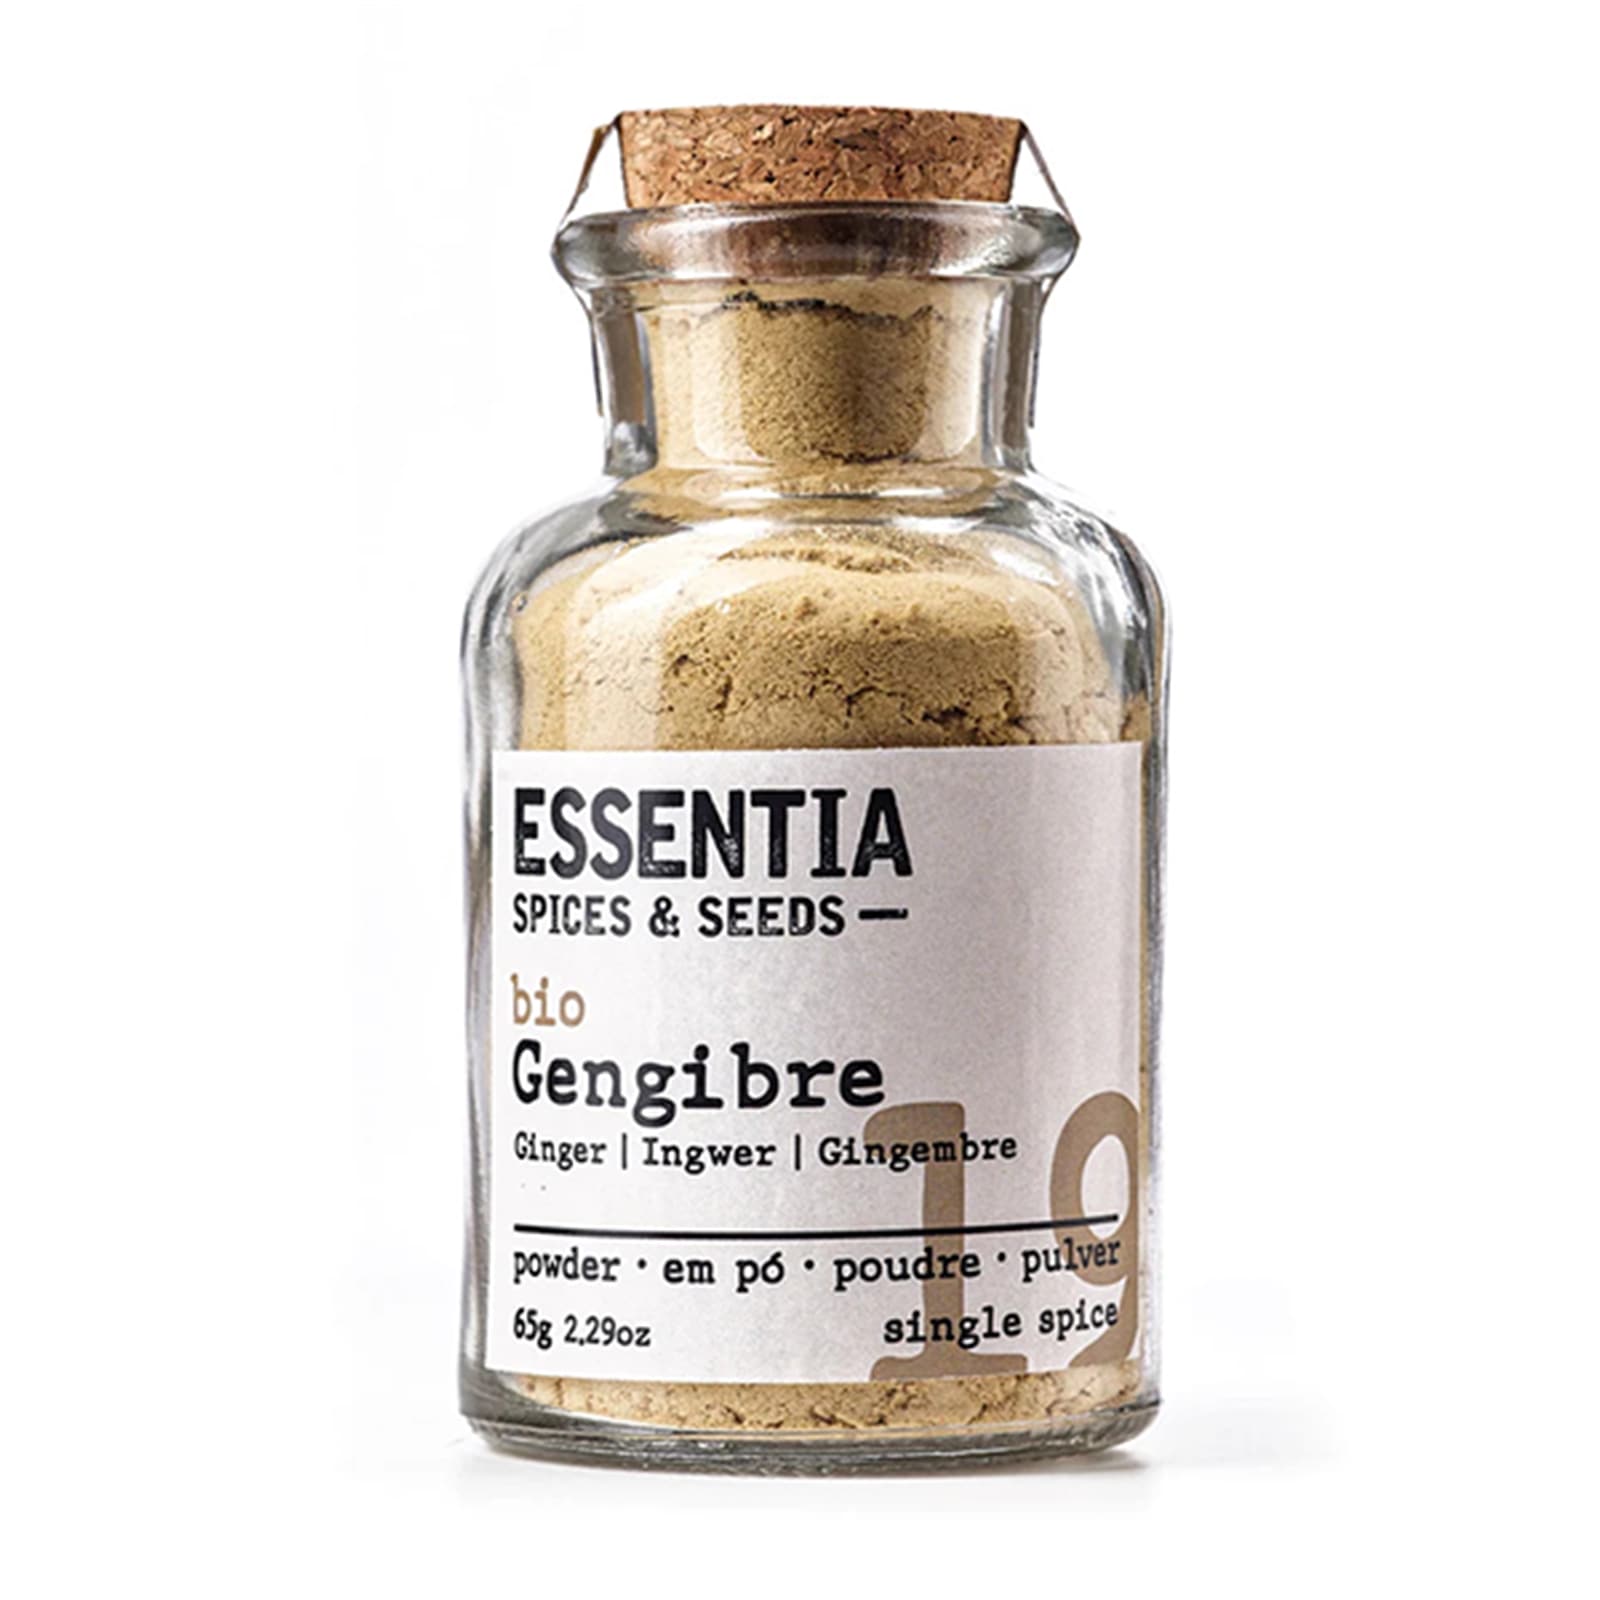 Essentia Ginger BIO Seasoning